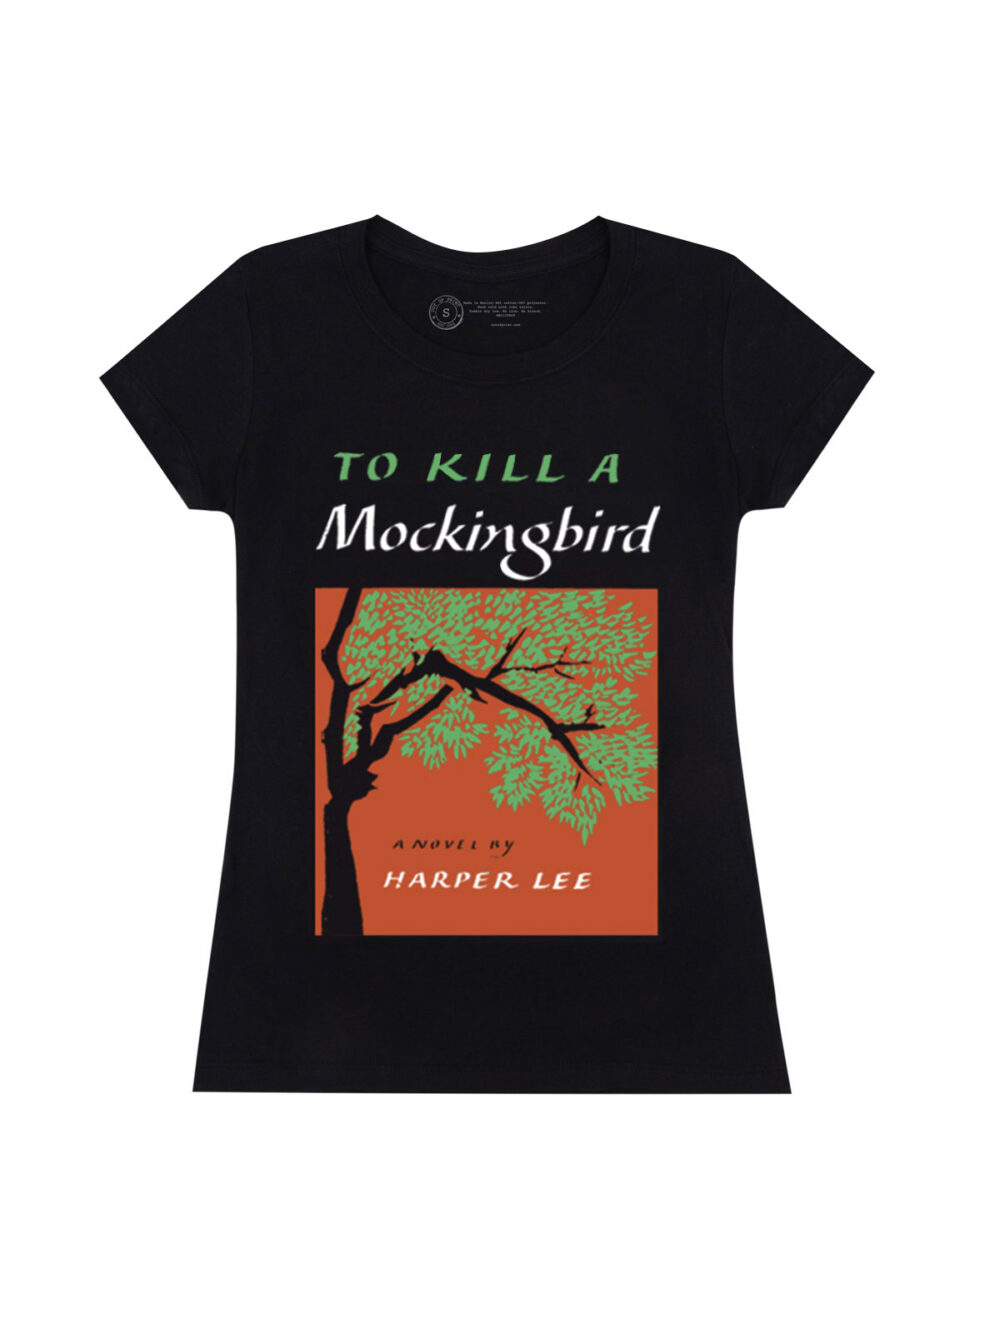 To Kill A Mockingbird Crew T-Shirt